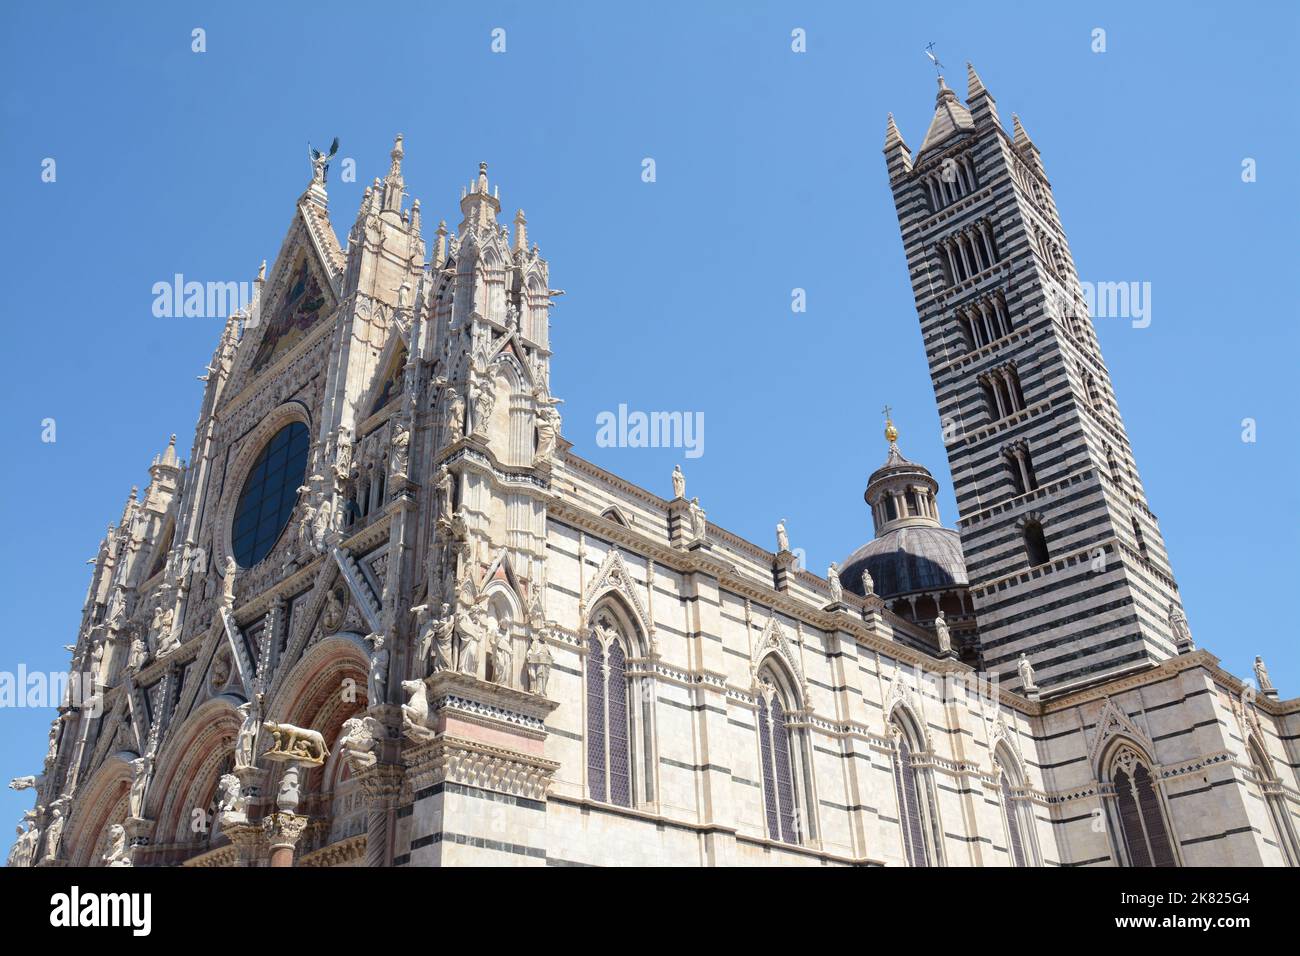 La catedral de Siena Santa Maria Assunta está construida en el estilo románico-gótico italiano y es una de las iglesias más bellas de Italia Foto de stock